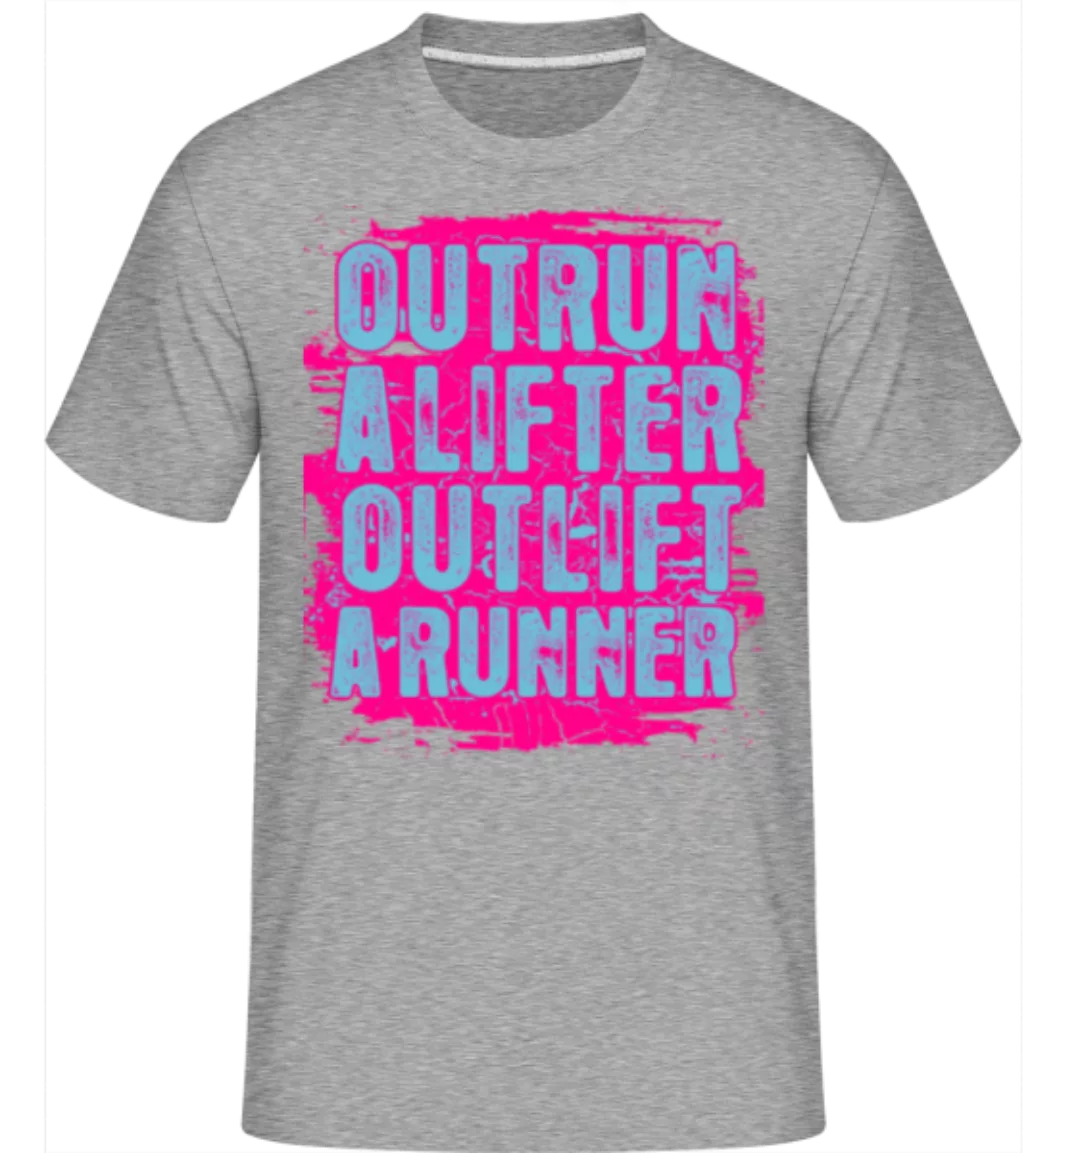 Outrun A Lifter Outlift A Runner · Shirtinator Männer T-Shirt günstig online kaufen